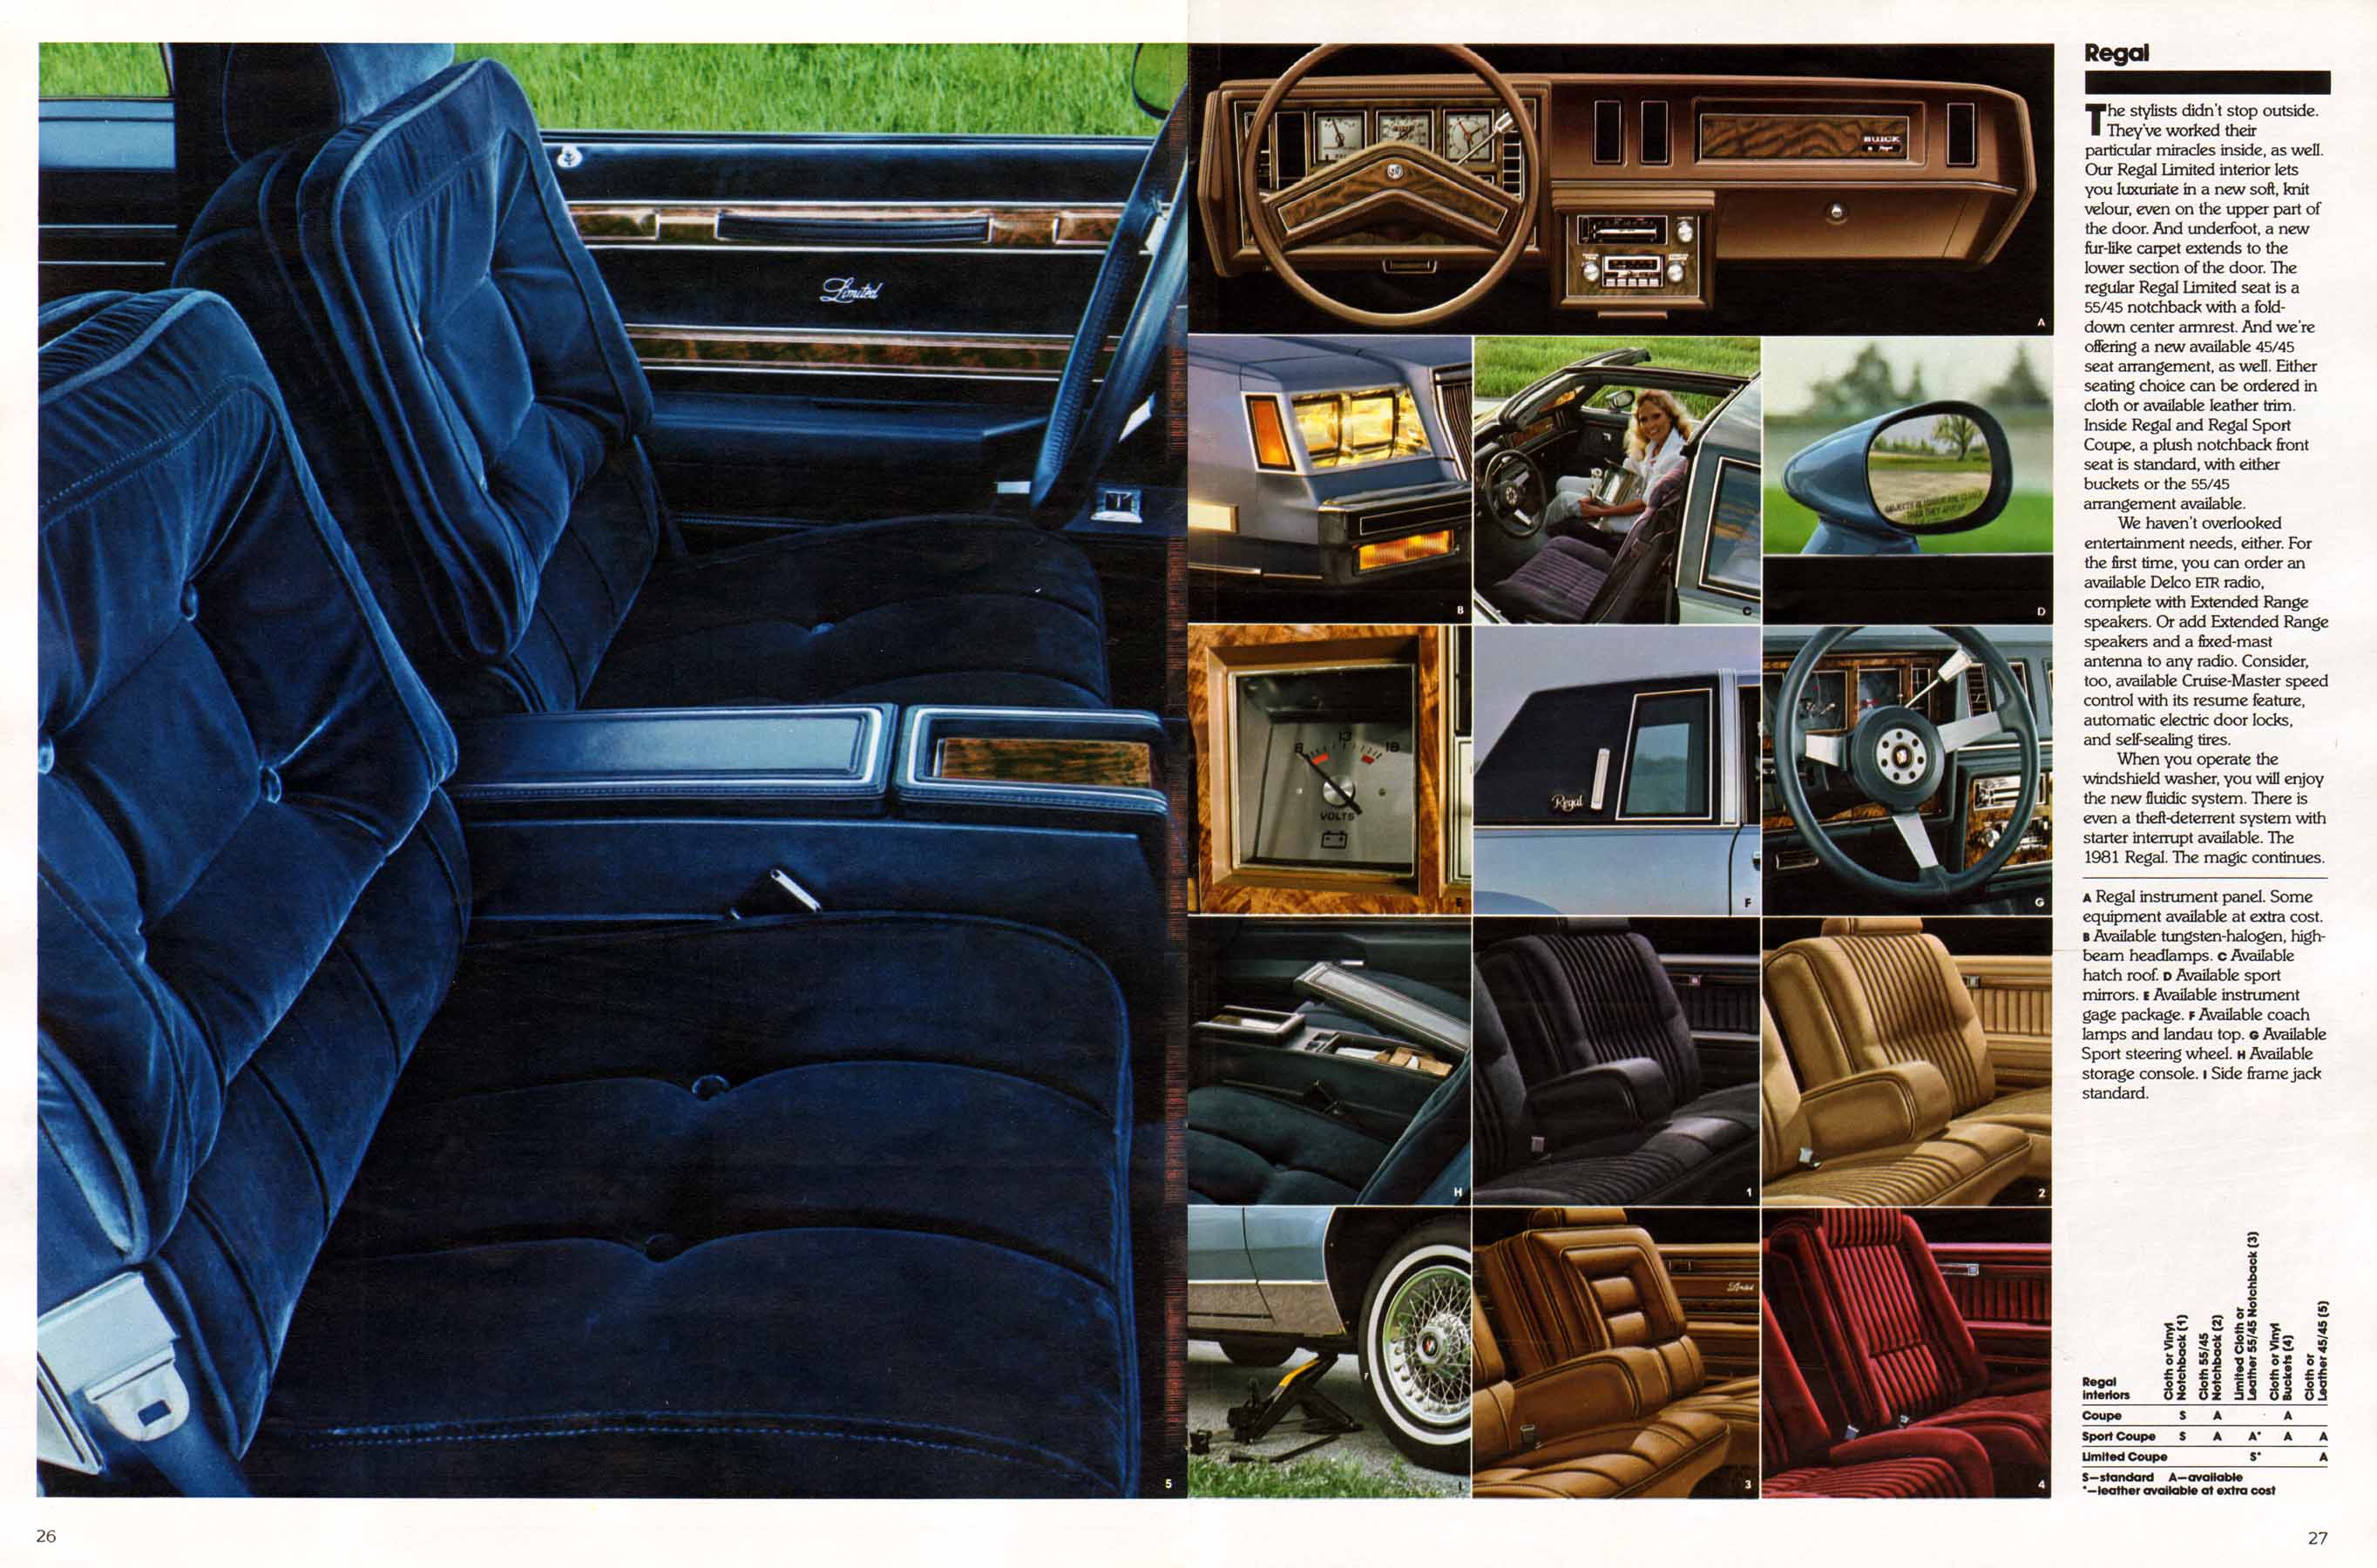 1981 Buick Full Line Prestige-26-27